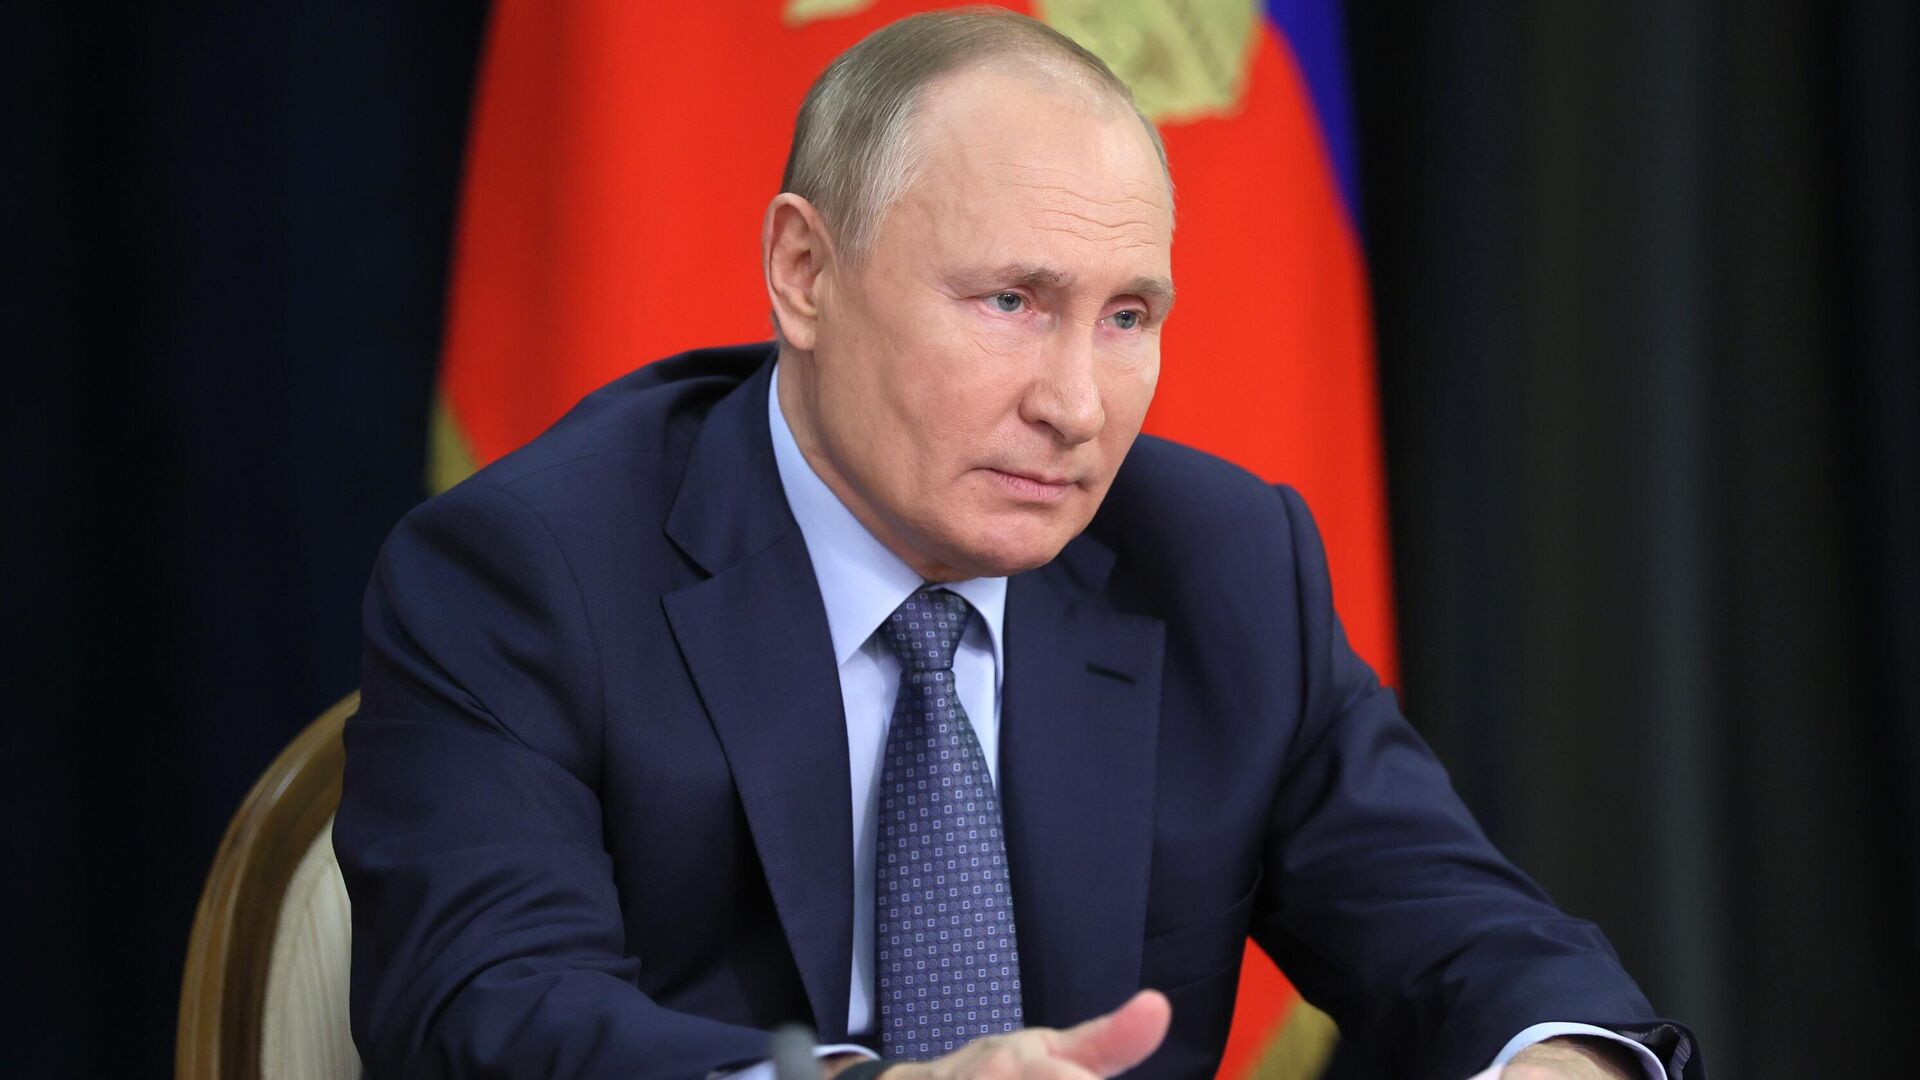 El presidente de Rusia, Vladímir Putin, durante una reunión sobre asuntos económicos, el 7 de diciembre de 2021 - Sputnik Mundo, 1920, 13.12.2021